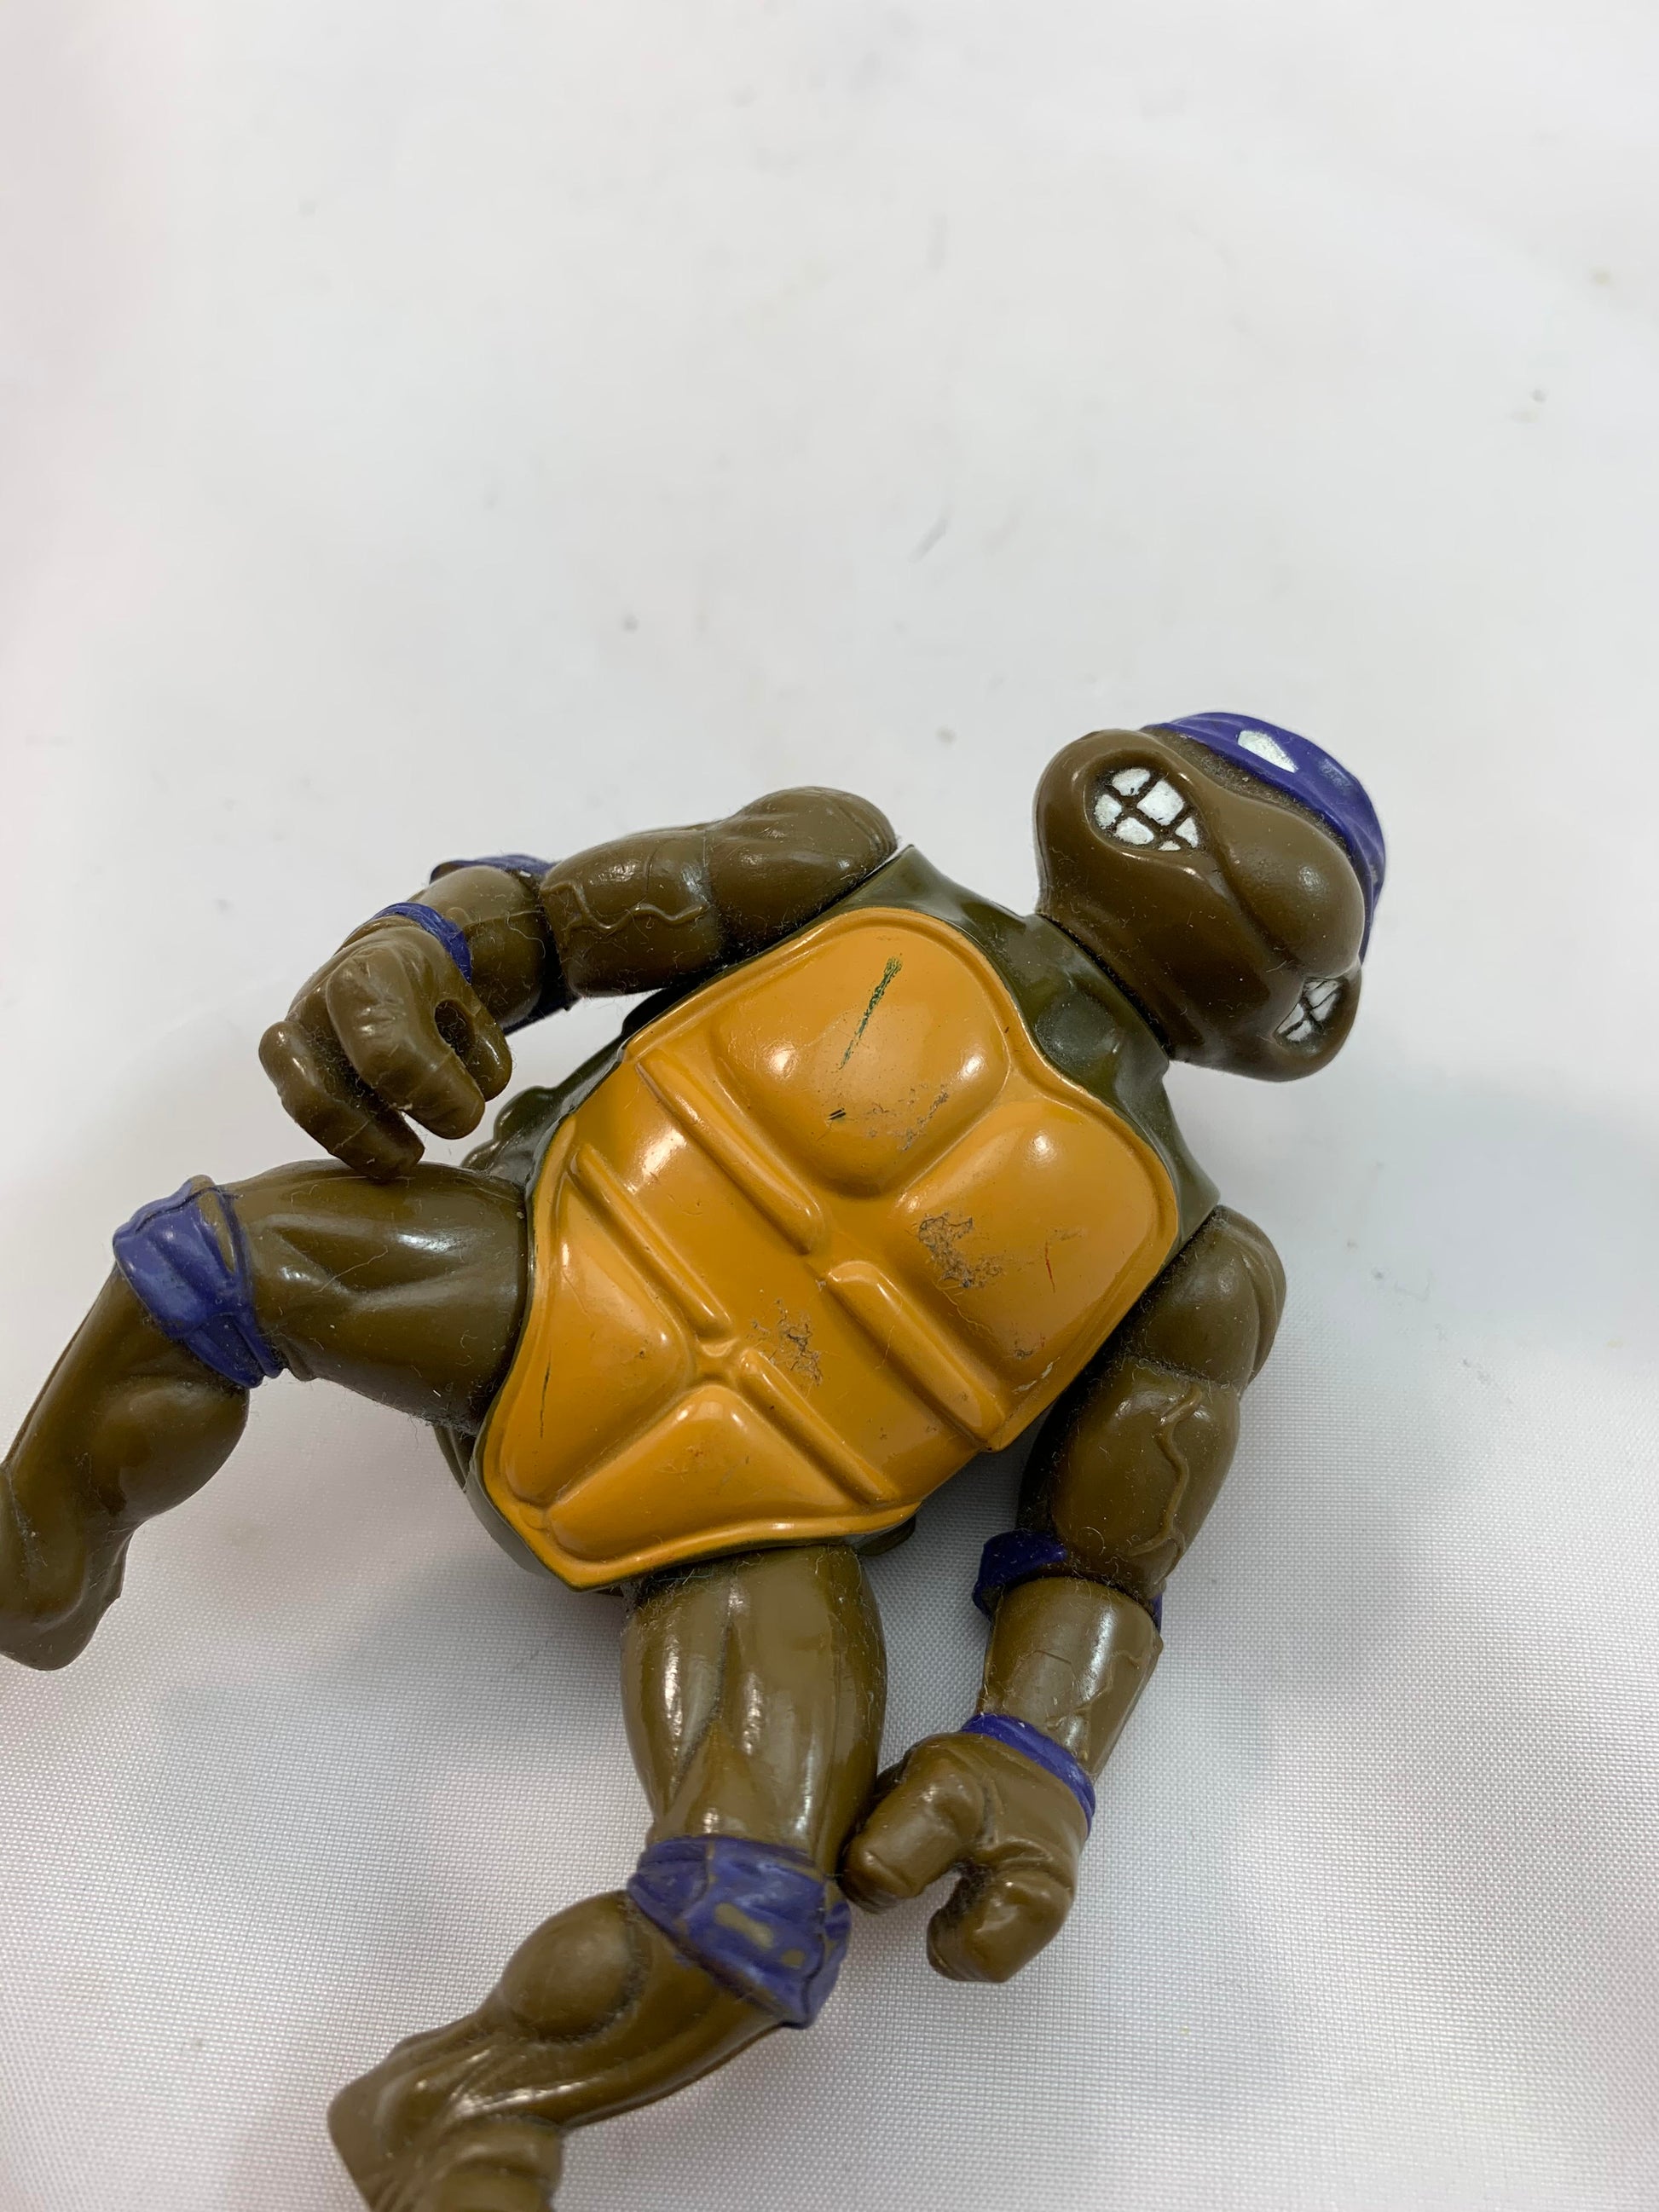 Playmates Viacom Teenage Mutant Ninja Turtles TMNT Leonardo 1988 - Loose